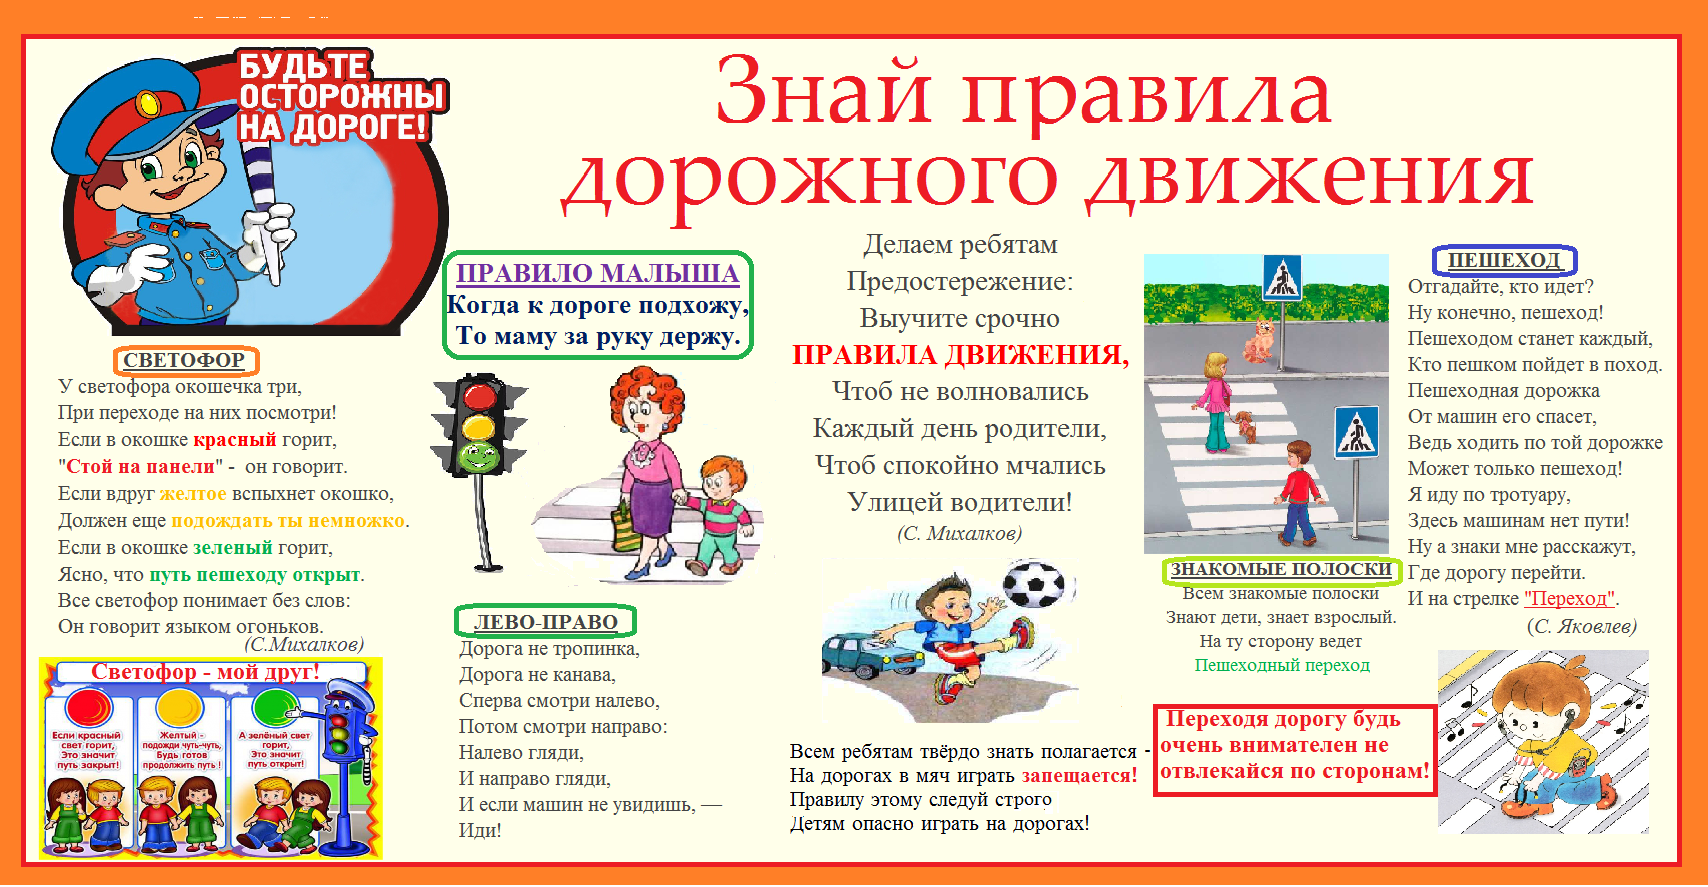 Правили дд. Правила дорожного движения для детей. Плакат по правилам дорожного движения для школьников. Плакат по правилам дорожного движения для детей. ПДД правила дорожного движения.